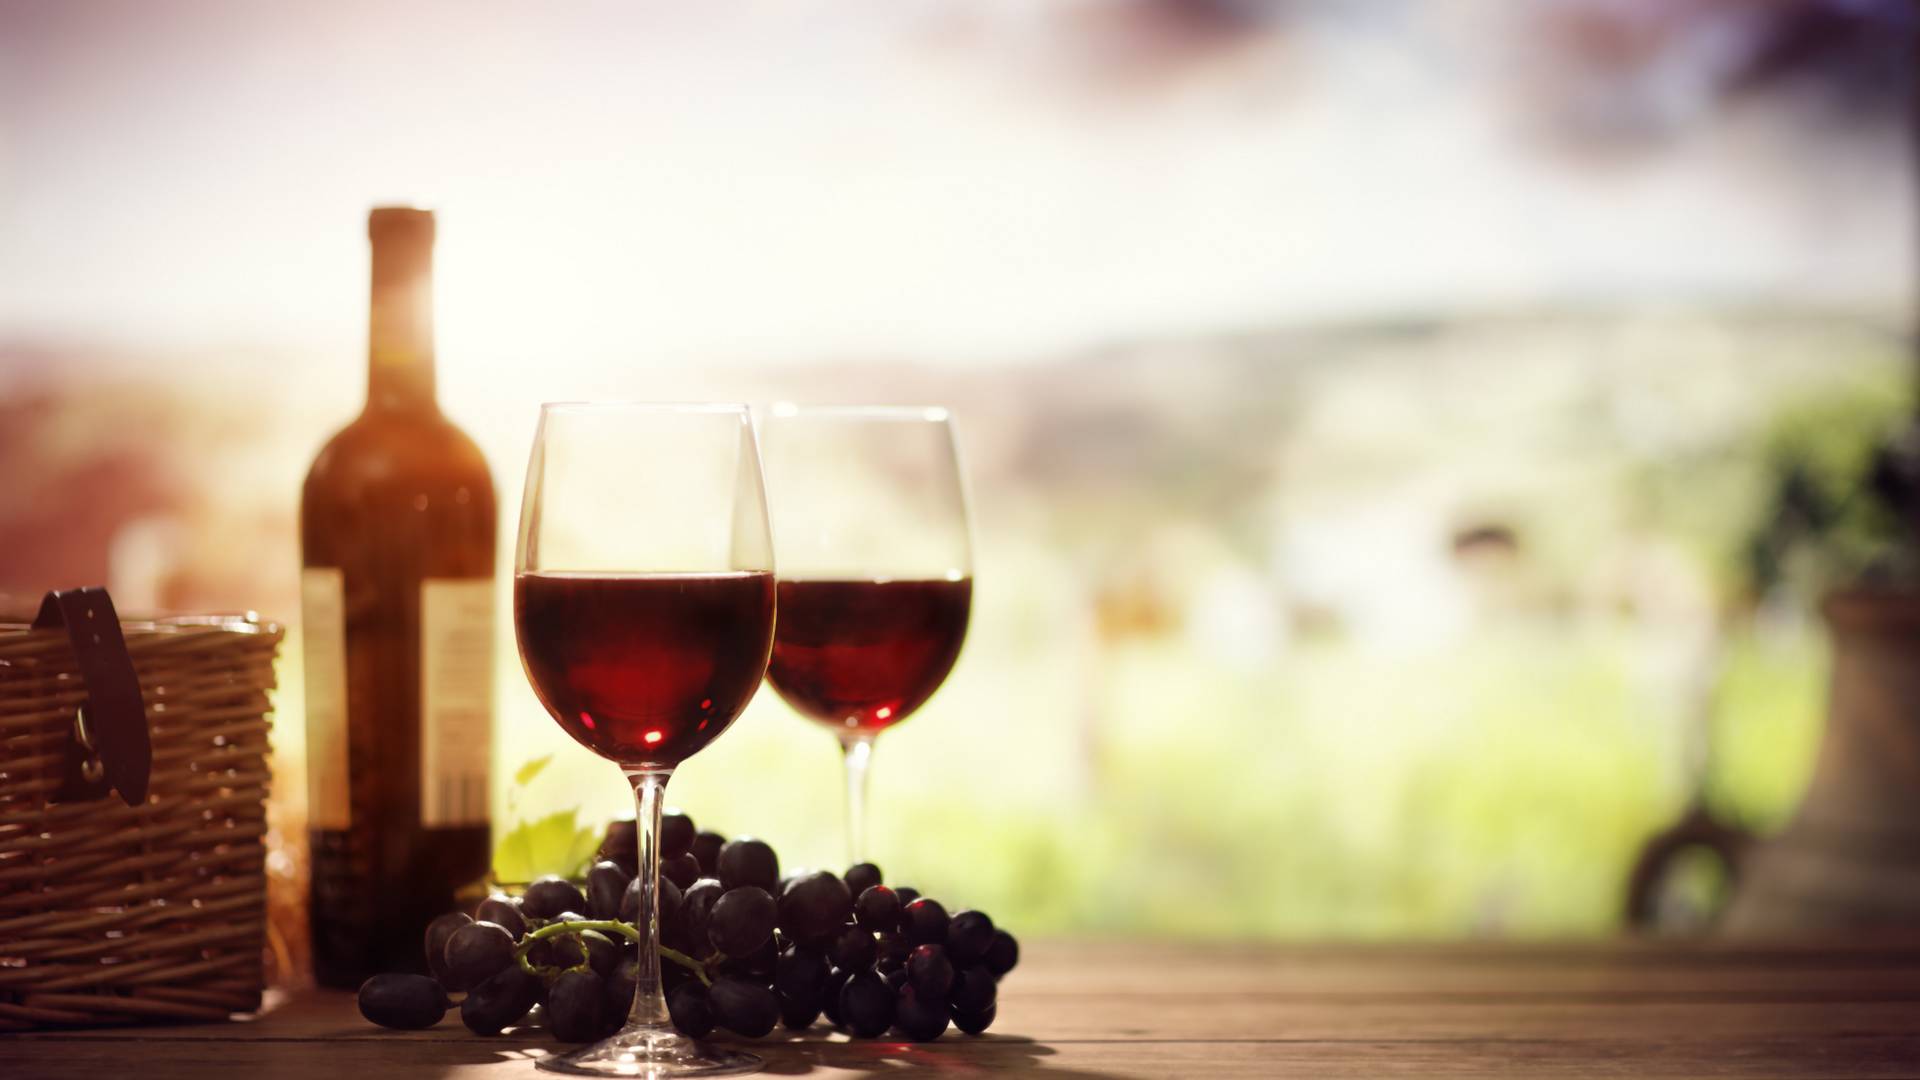 Wino z winogron - klasyka domowych trunków. Tradycyjny przepis